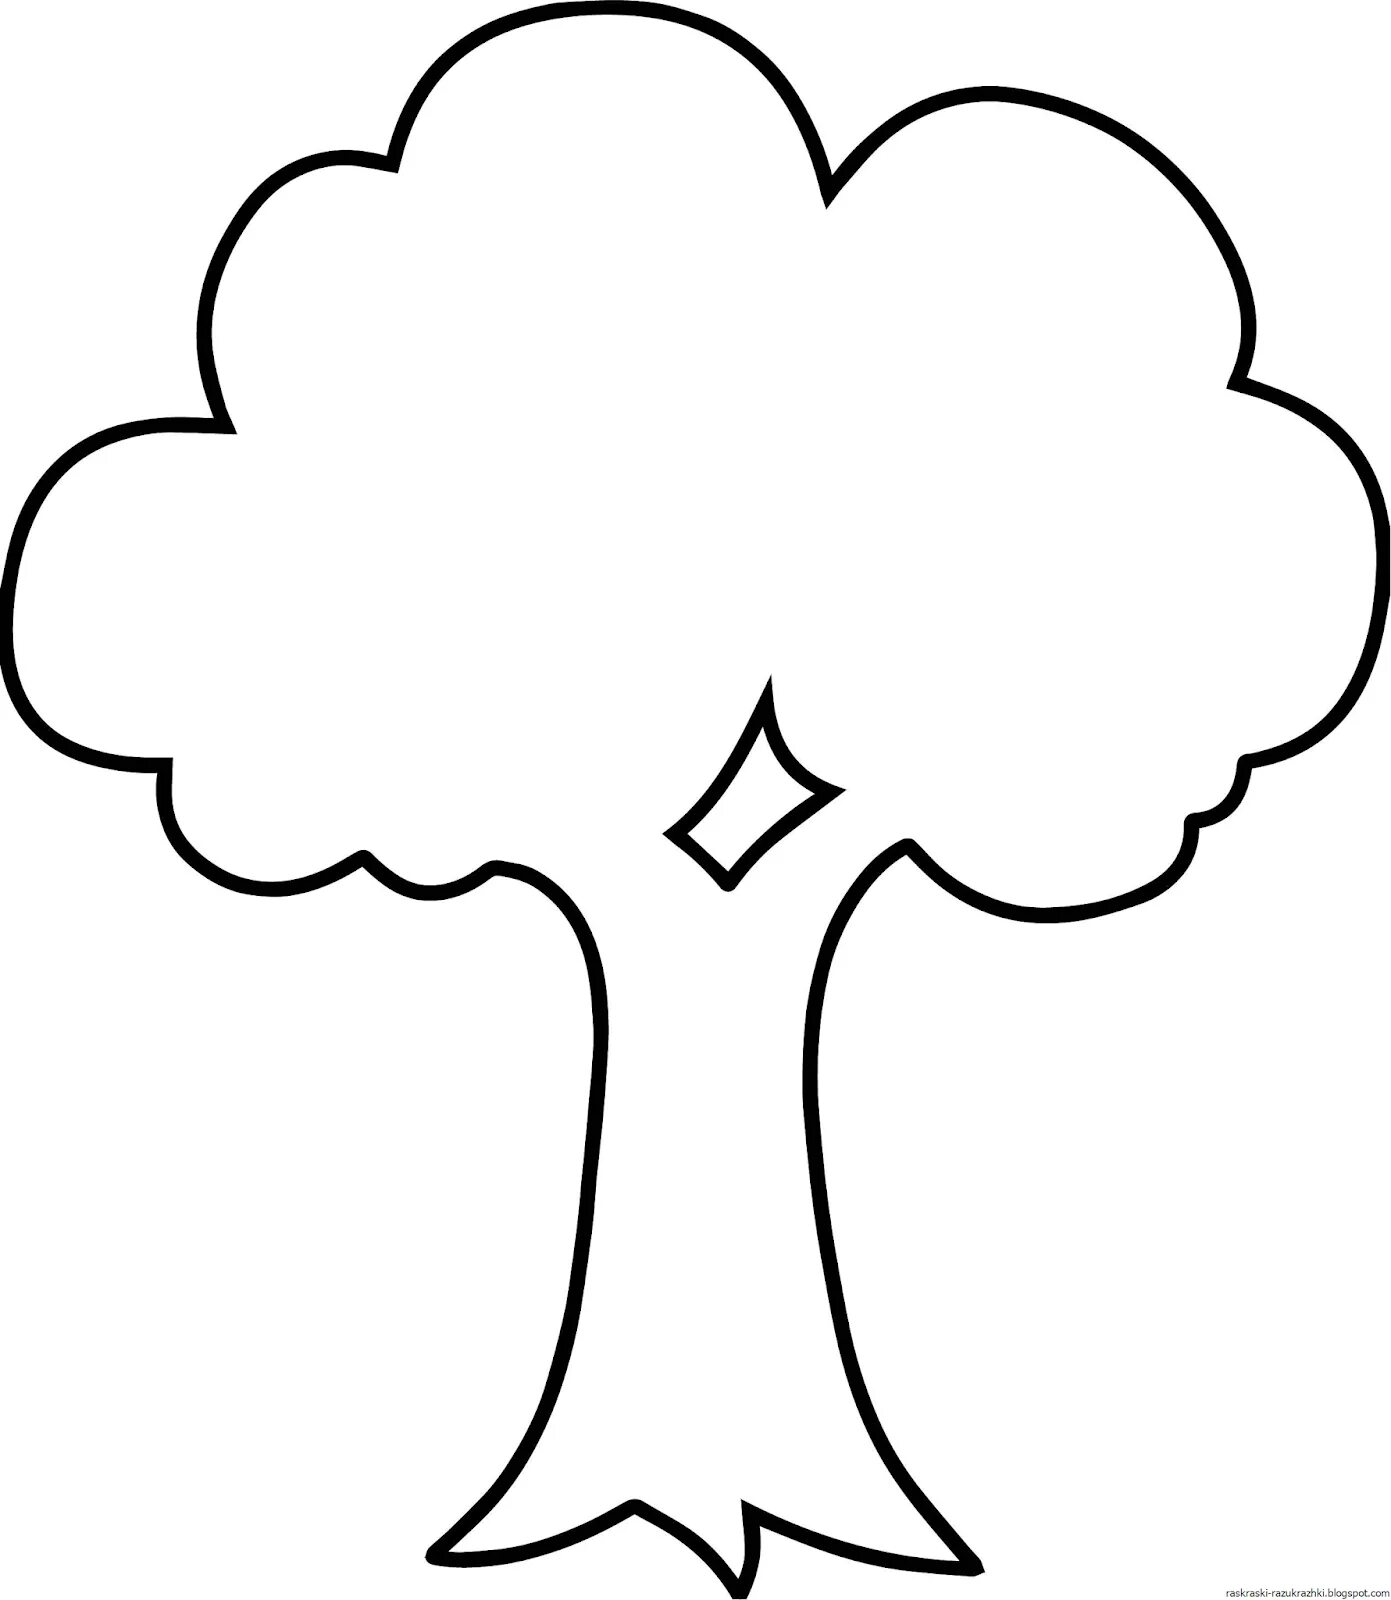 Аппликация дерево шаблон распечатать. Дерево раскраска. Трафарет "дерево". Дерево раскраска для детей. Дерево раскраска для малышей.